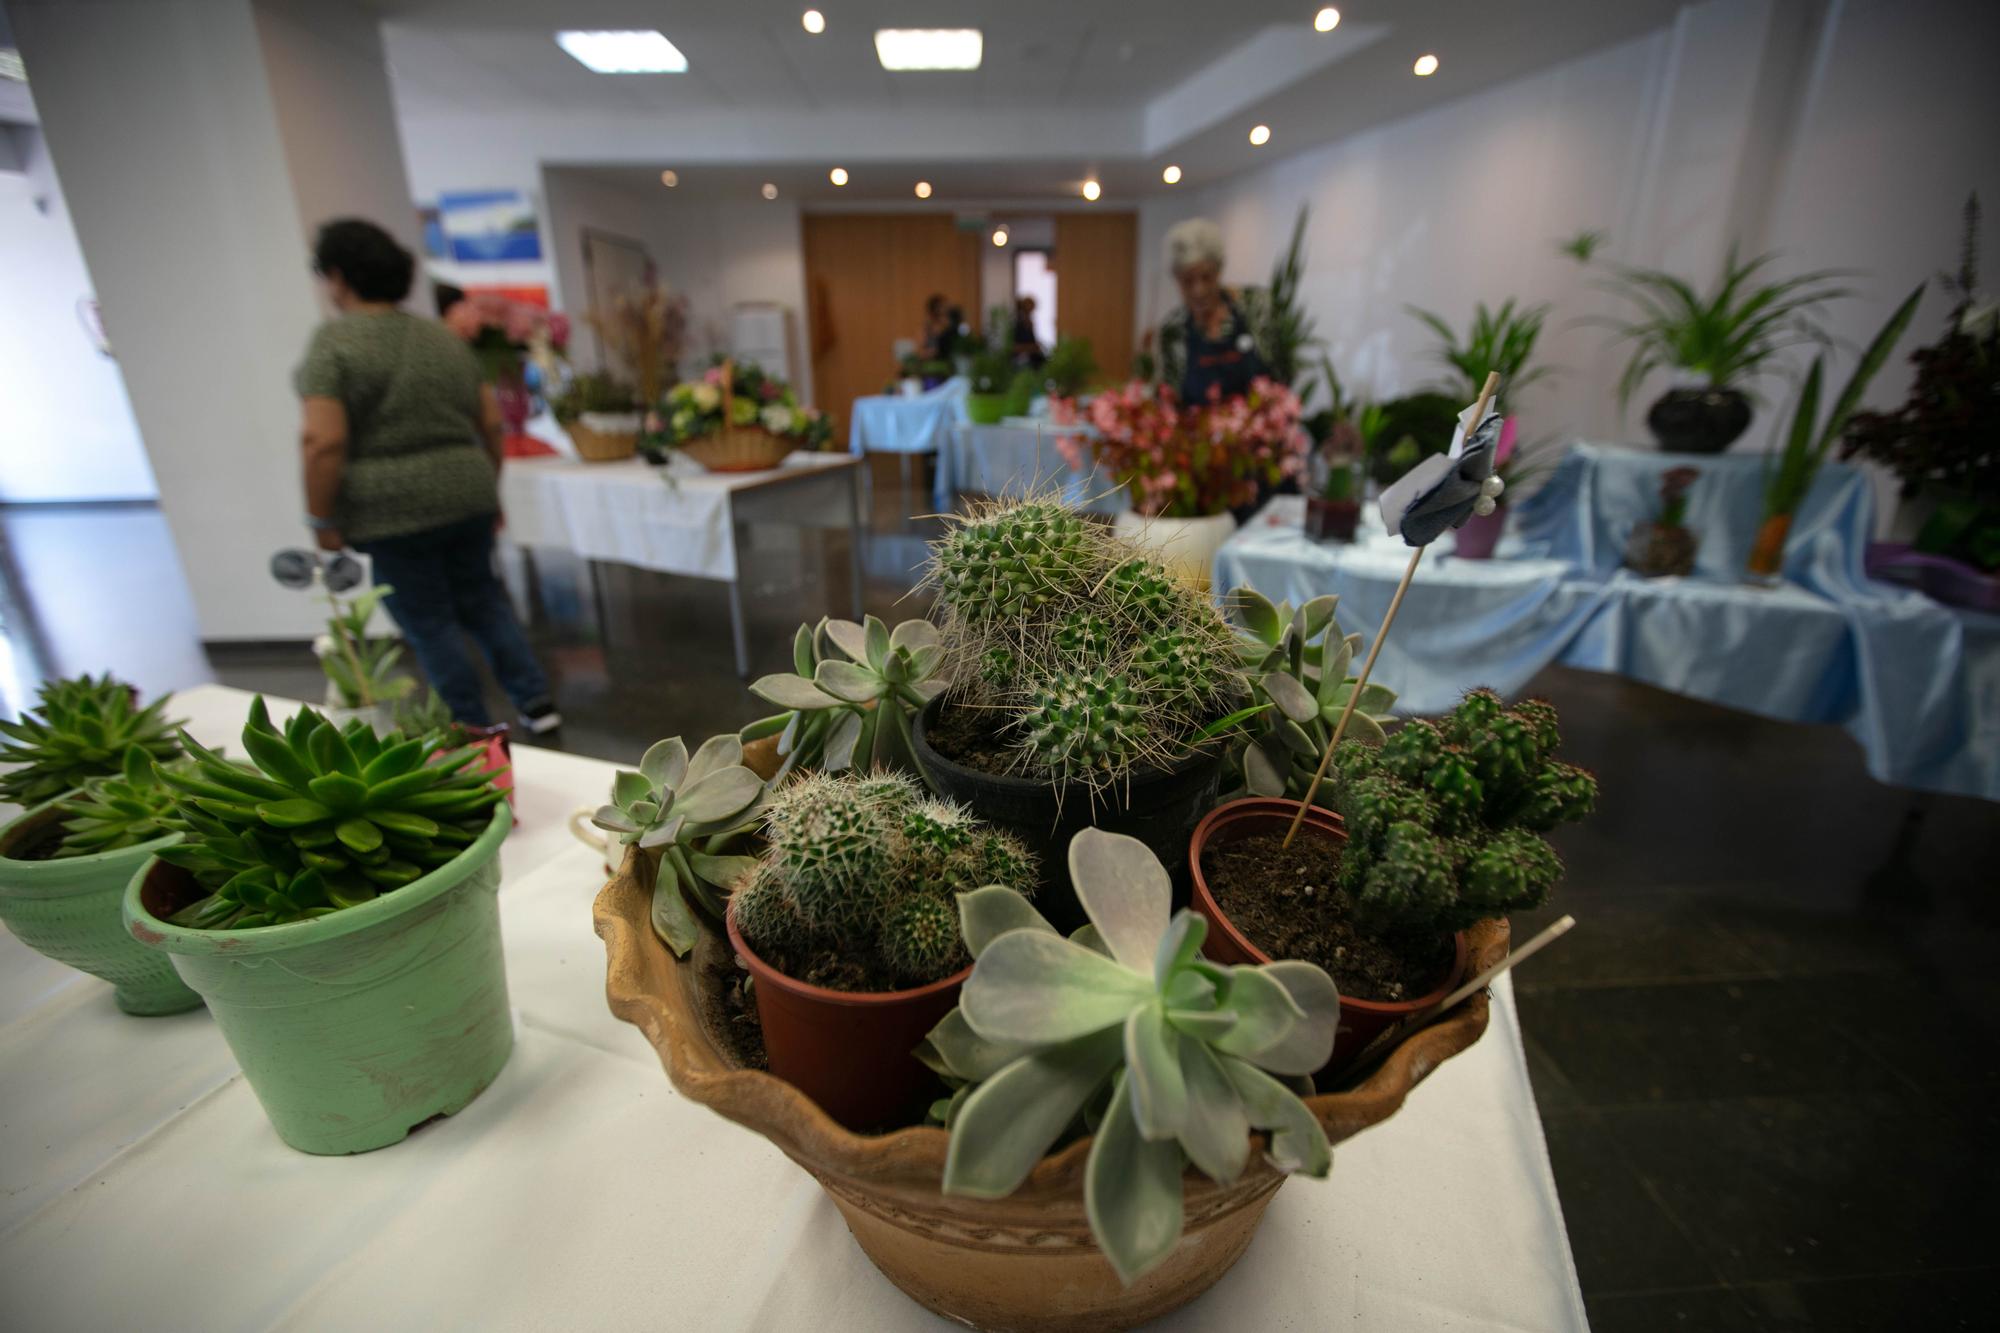 Exposición de plantas y mucha tradición en Puig d'en Valls